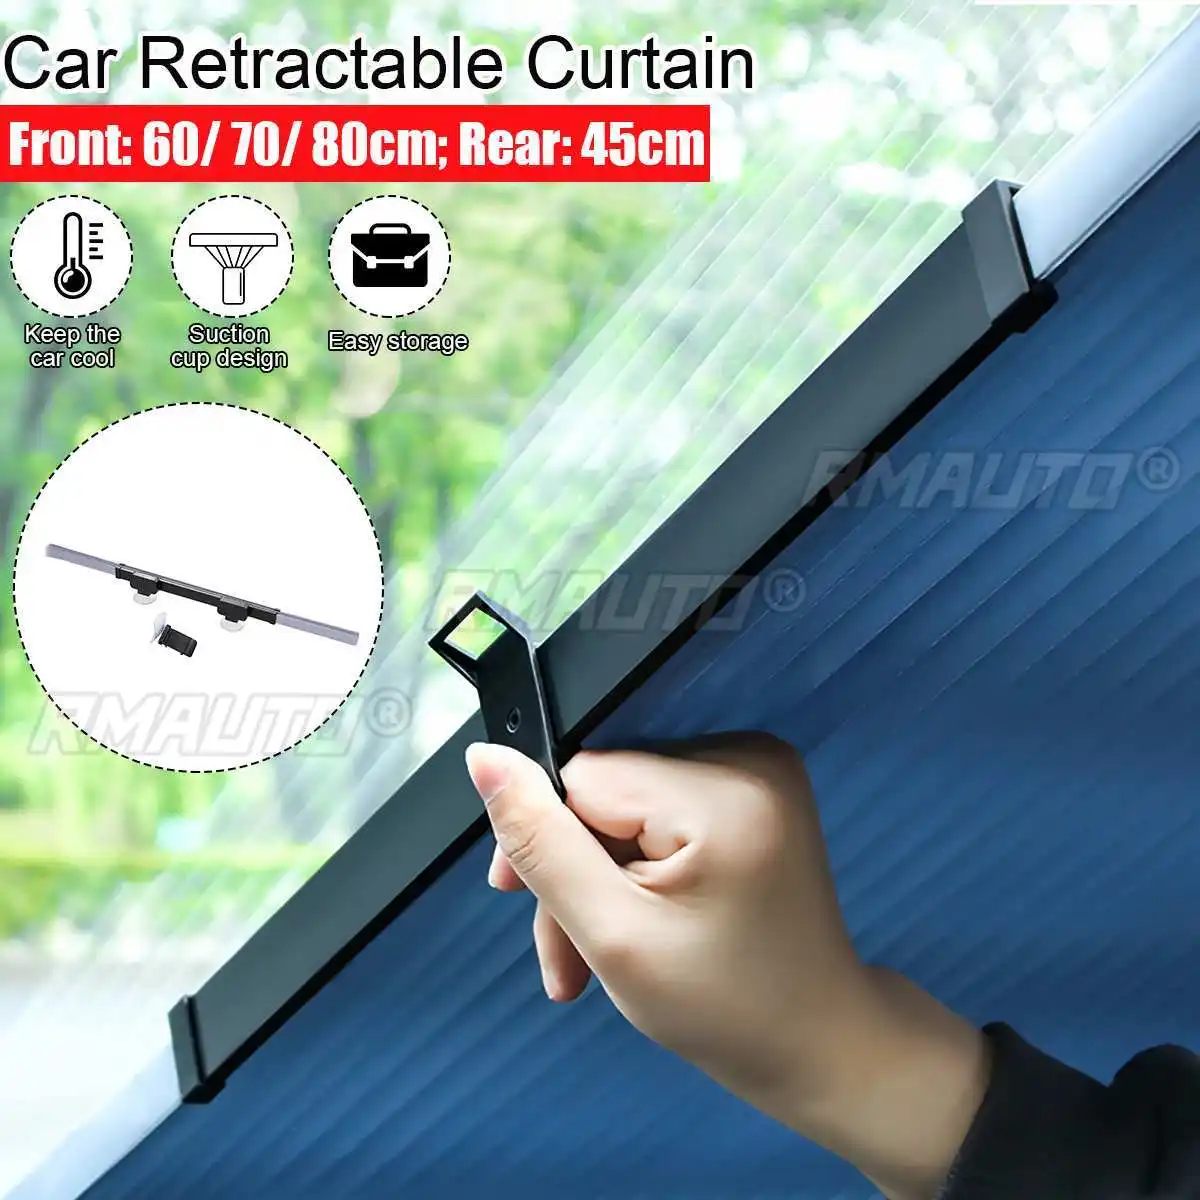 60cm/70cm/80cm parabrezza parasole auto tenda retrattile copertura riflettente pellicola in alluminio tende anti-uv auto Shad